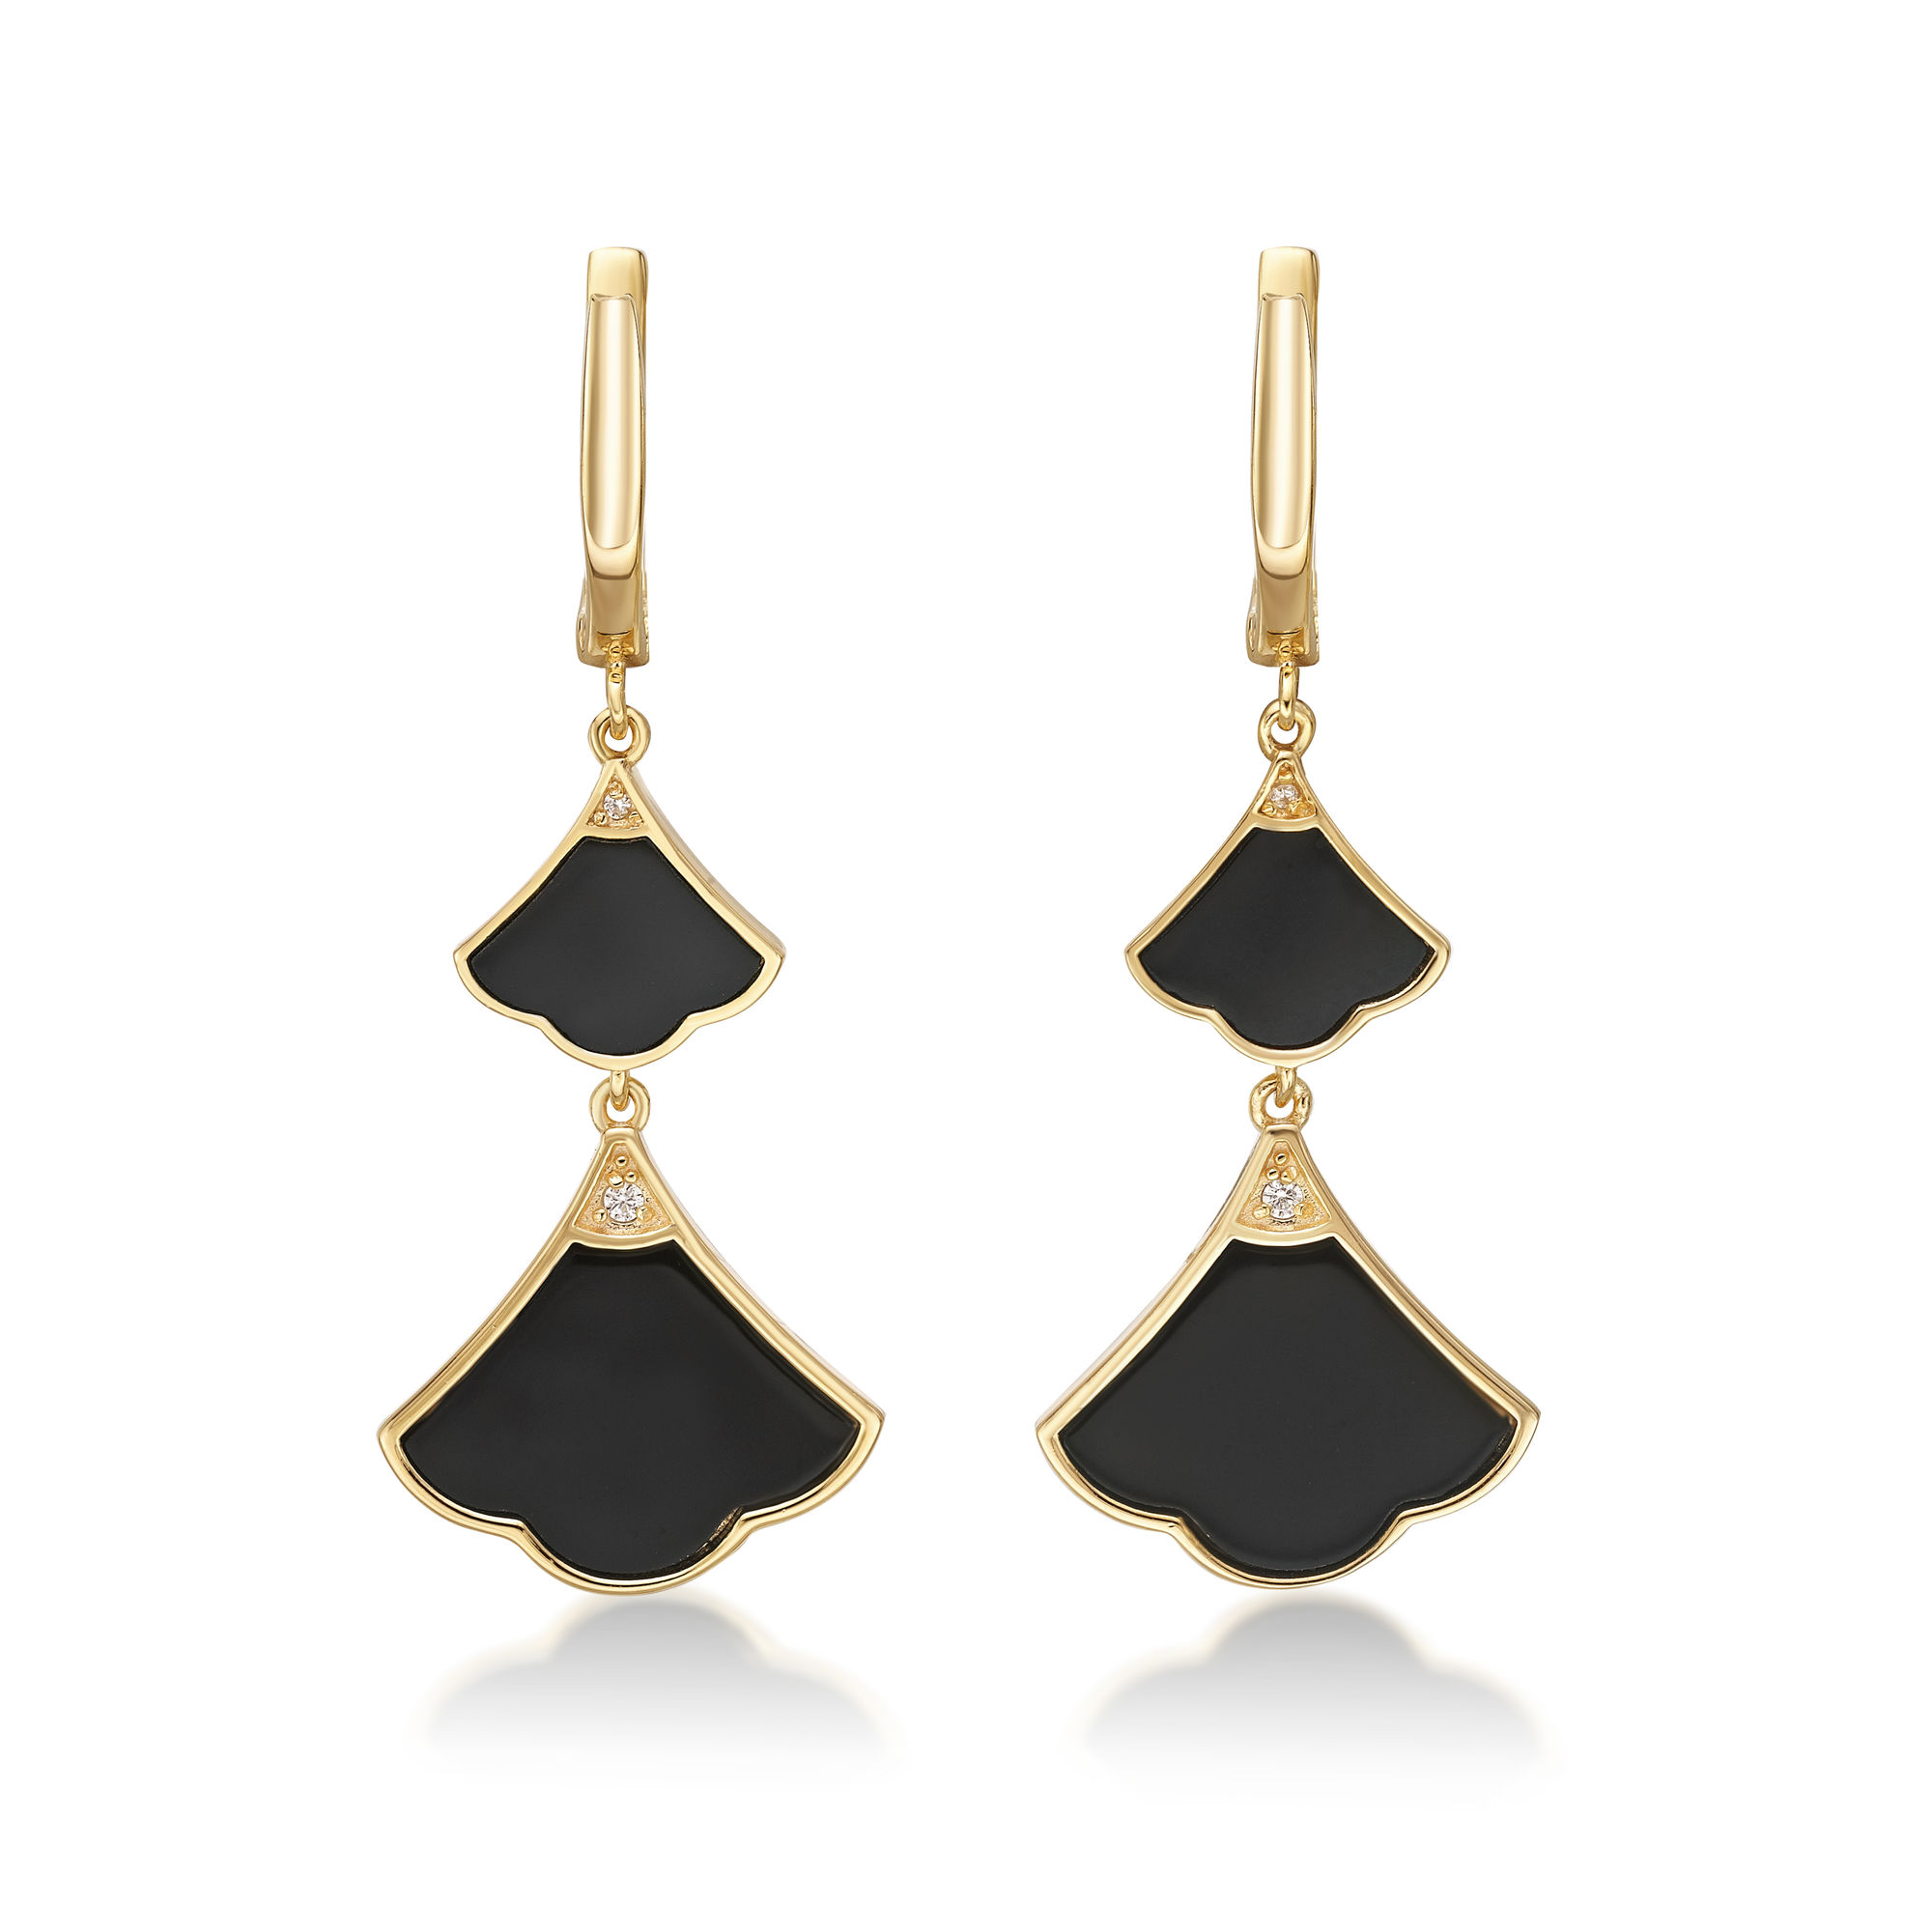 48794-earrings-fashion-jewelry-sterling-silver-black-onyx-48794-3.jpg